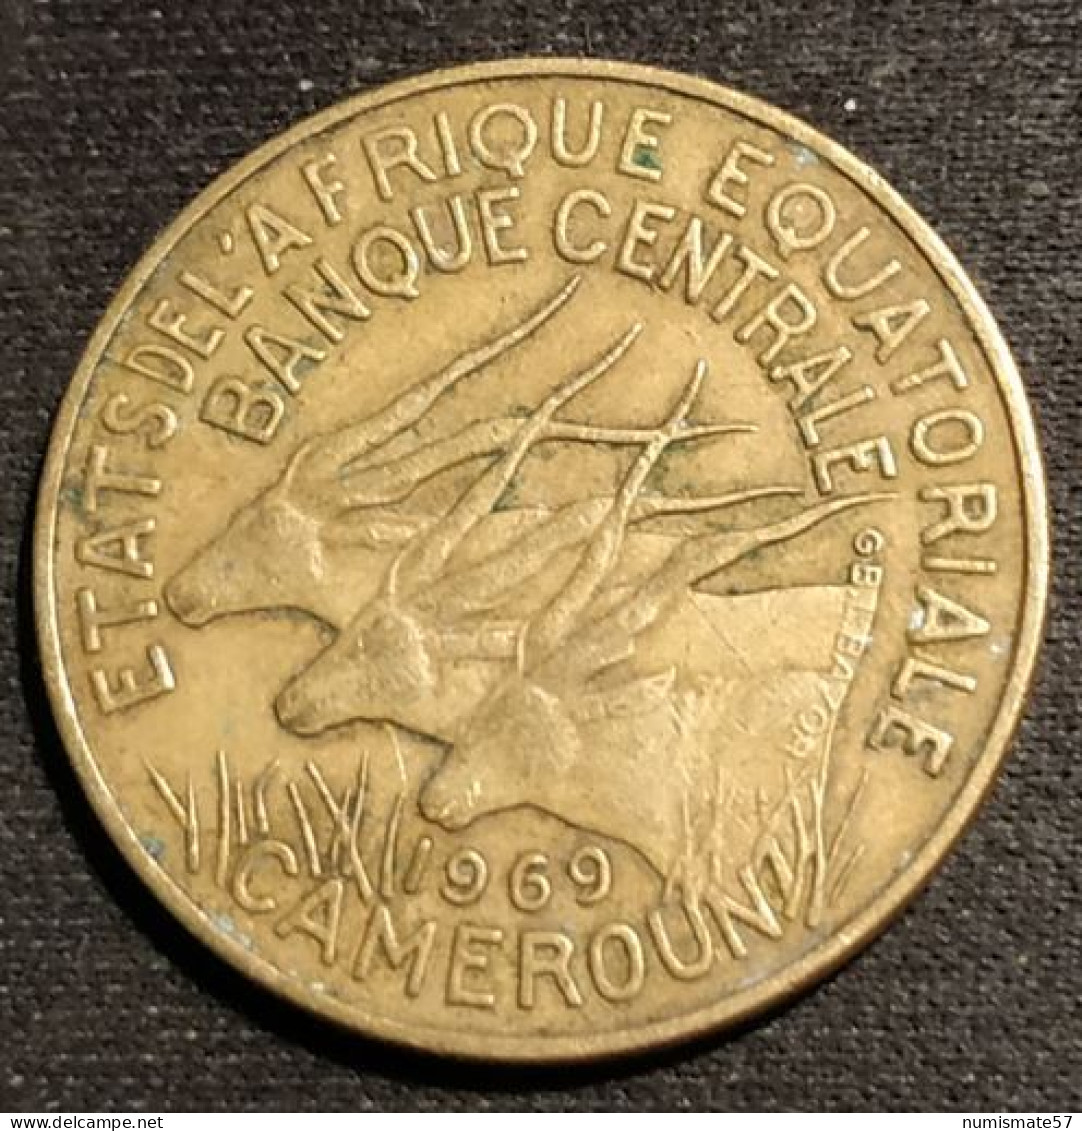 CAMEROUN - ETATS DE L'AFRIQUE EQUATORIALE - 10 FRANCS 1969 - KM 2a - Cameroun